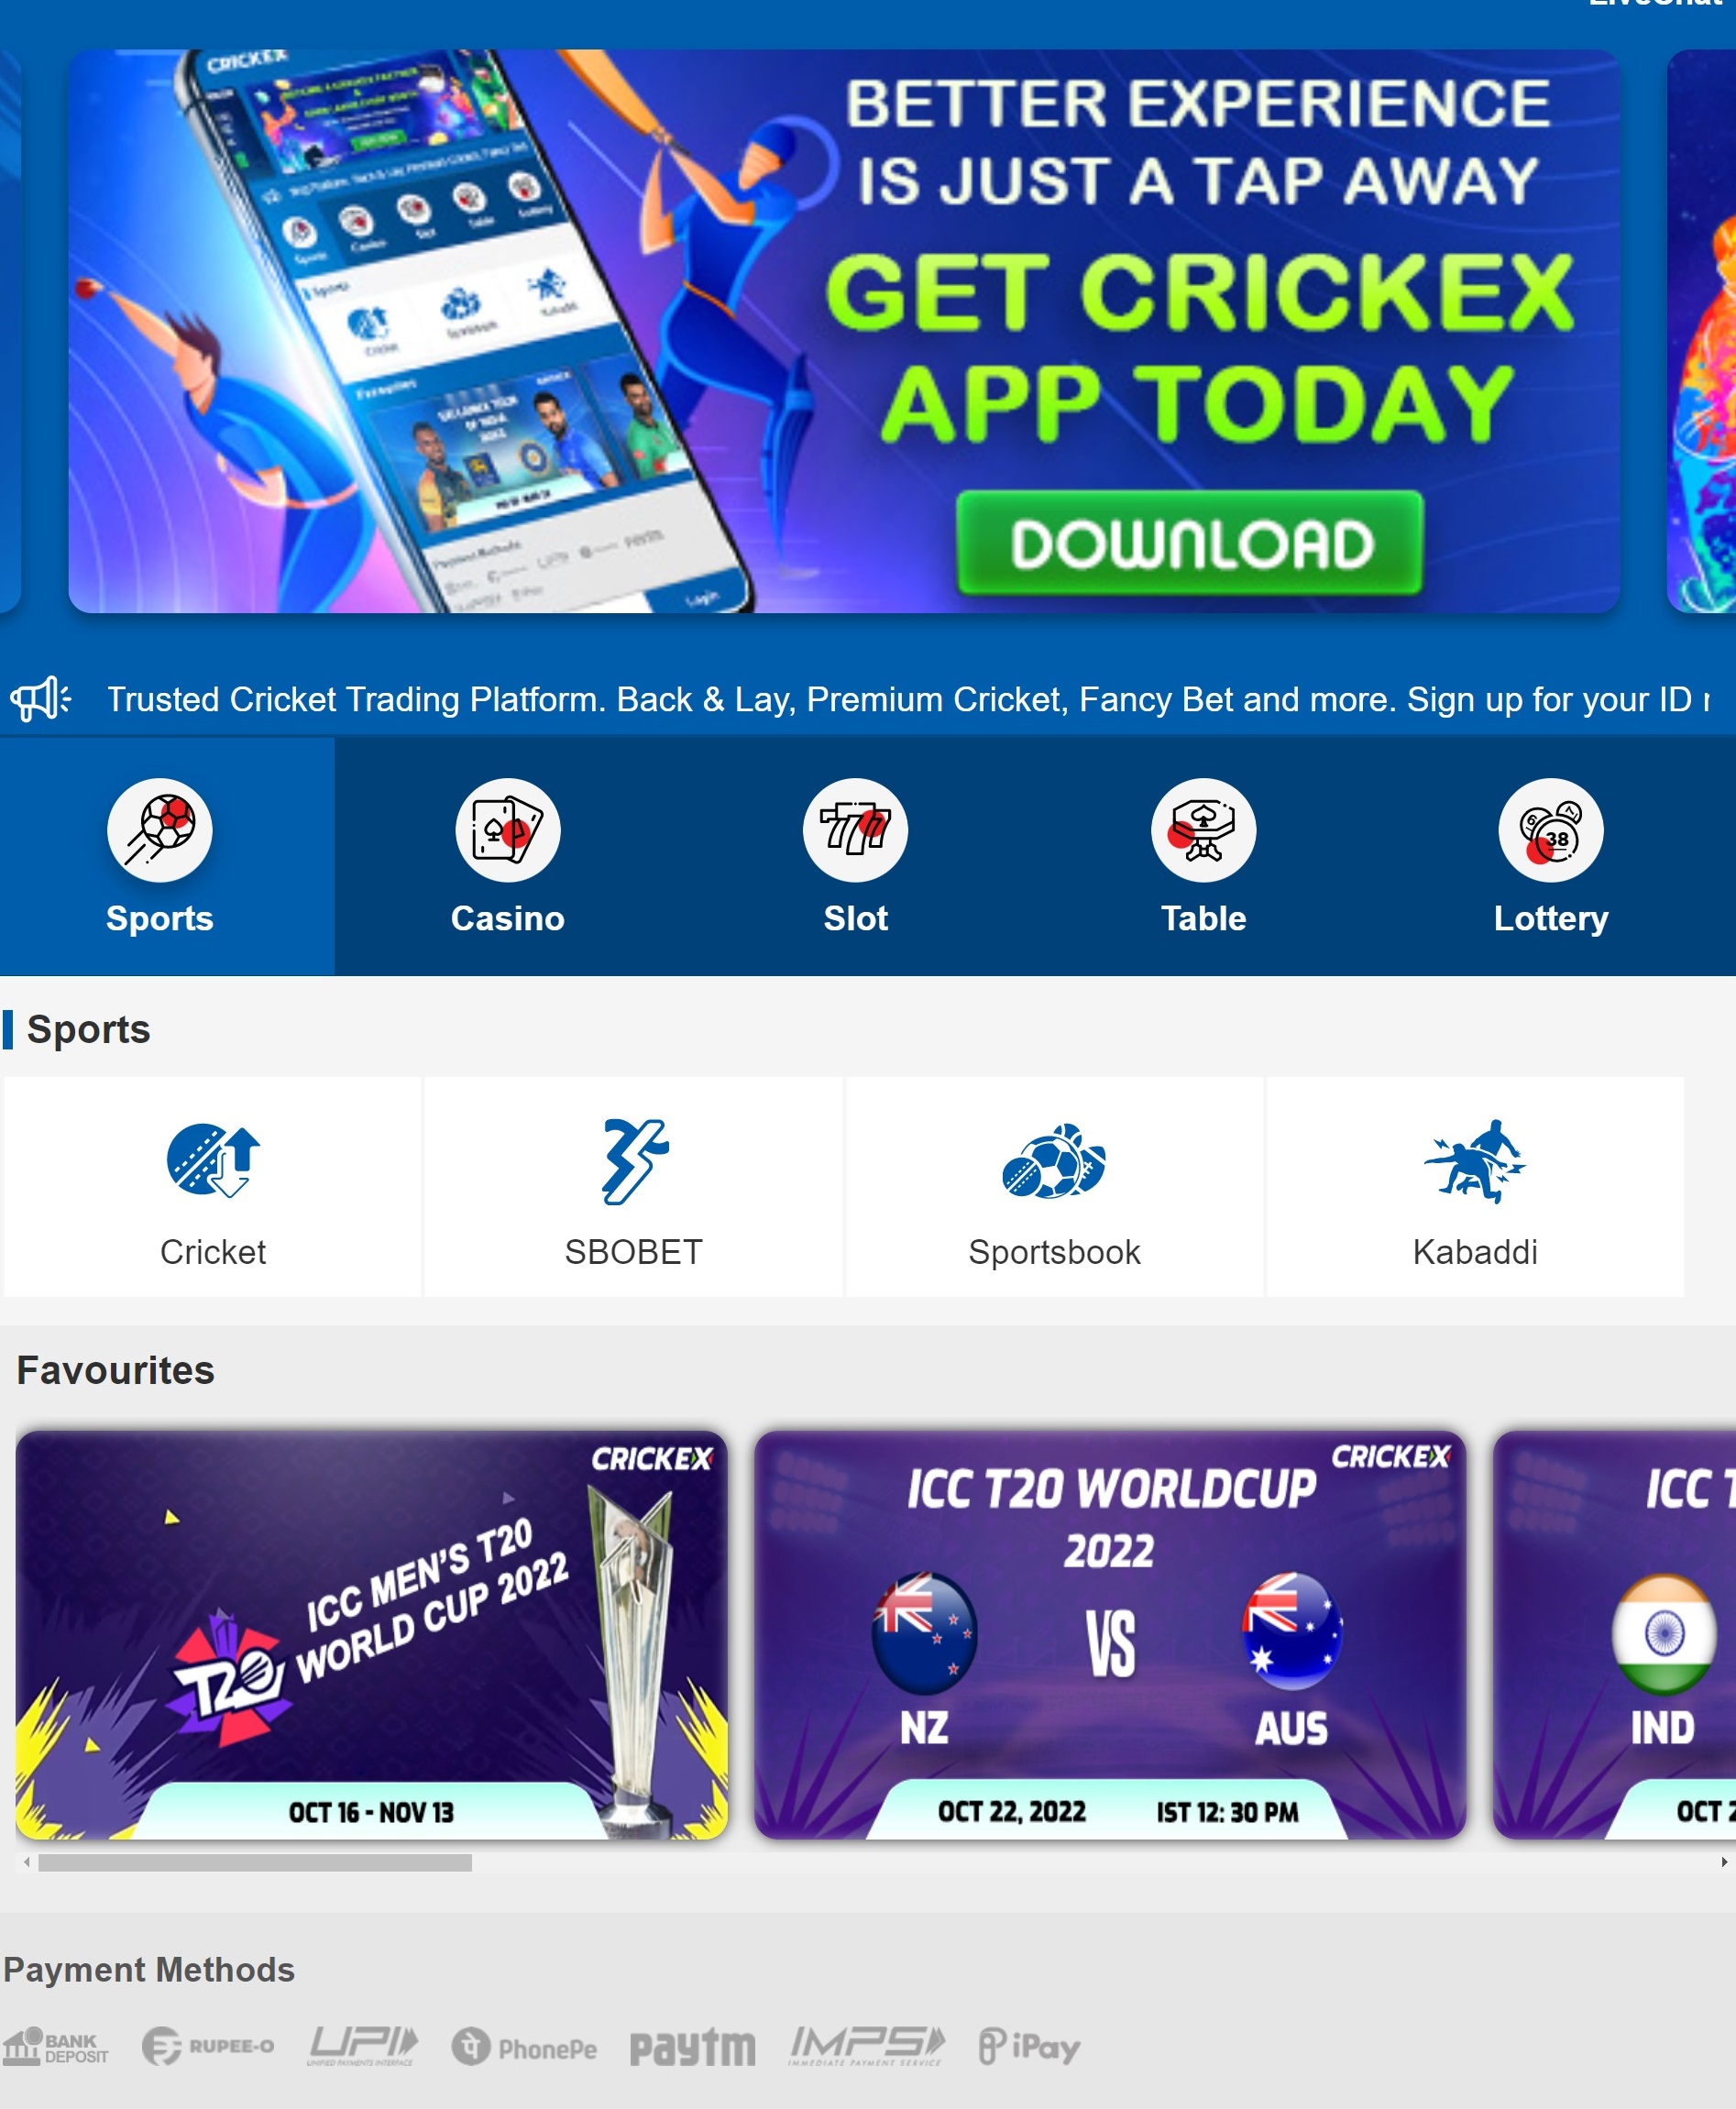 Crickex App - भारत की गैम्बलिंग इंडस्ट्री में निस्संदेह रूप से सबसे आगे